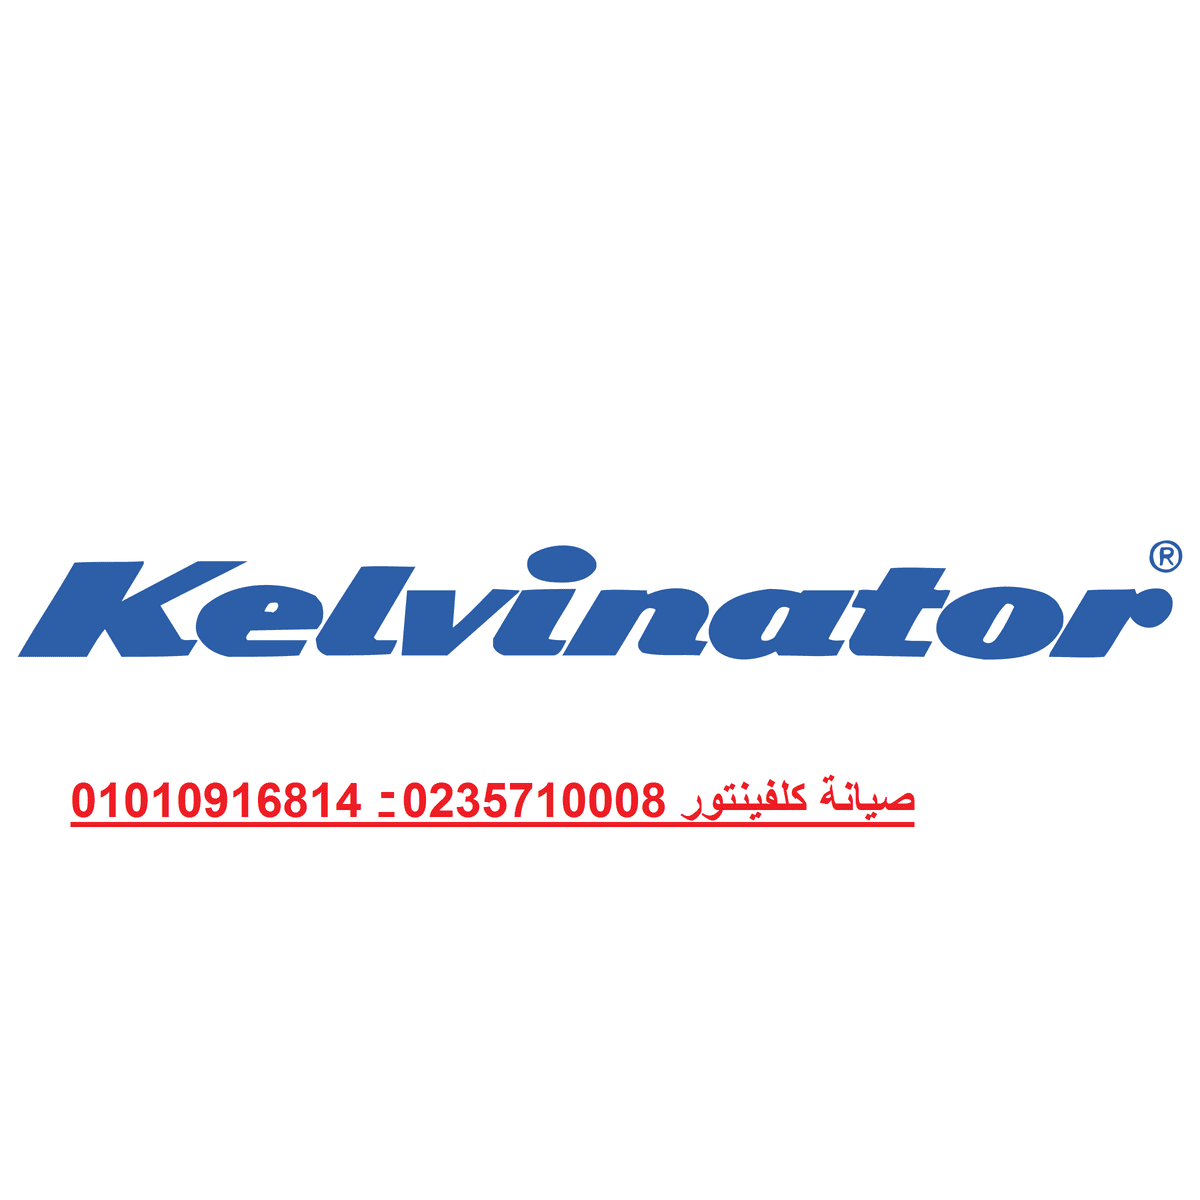 kelvinator-1-logo-png-transparent